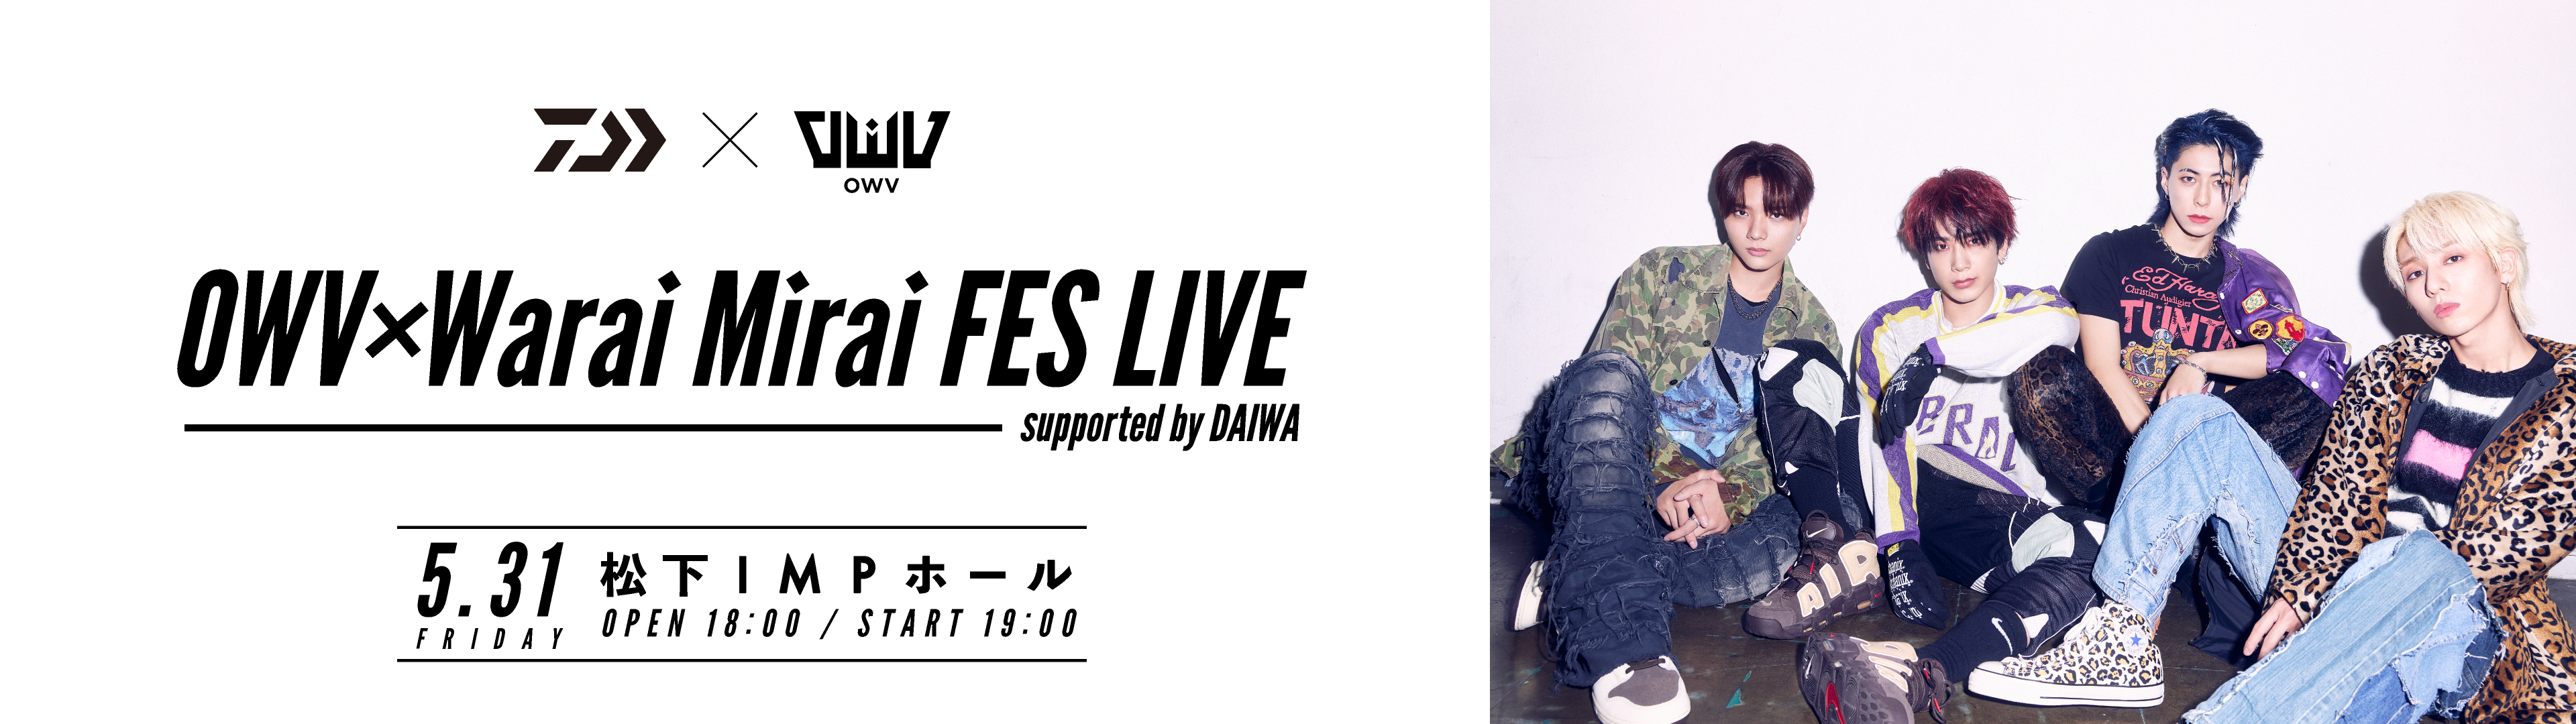 OWV×Warai Mirai Fes LIVE supported by DAIWA